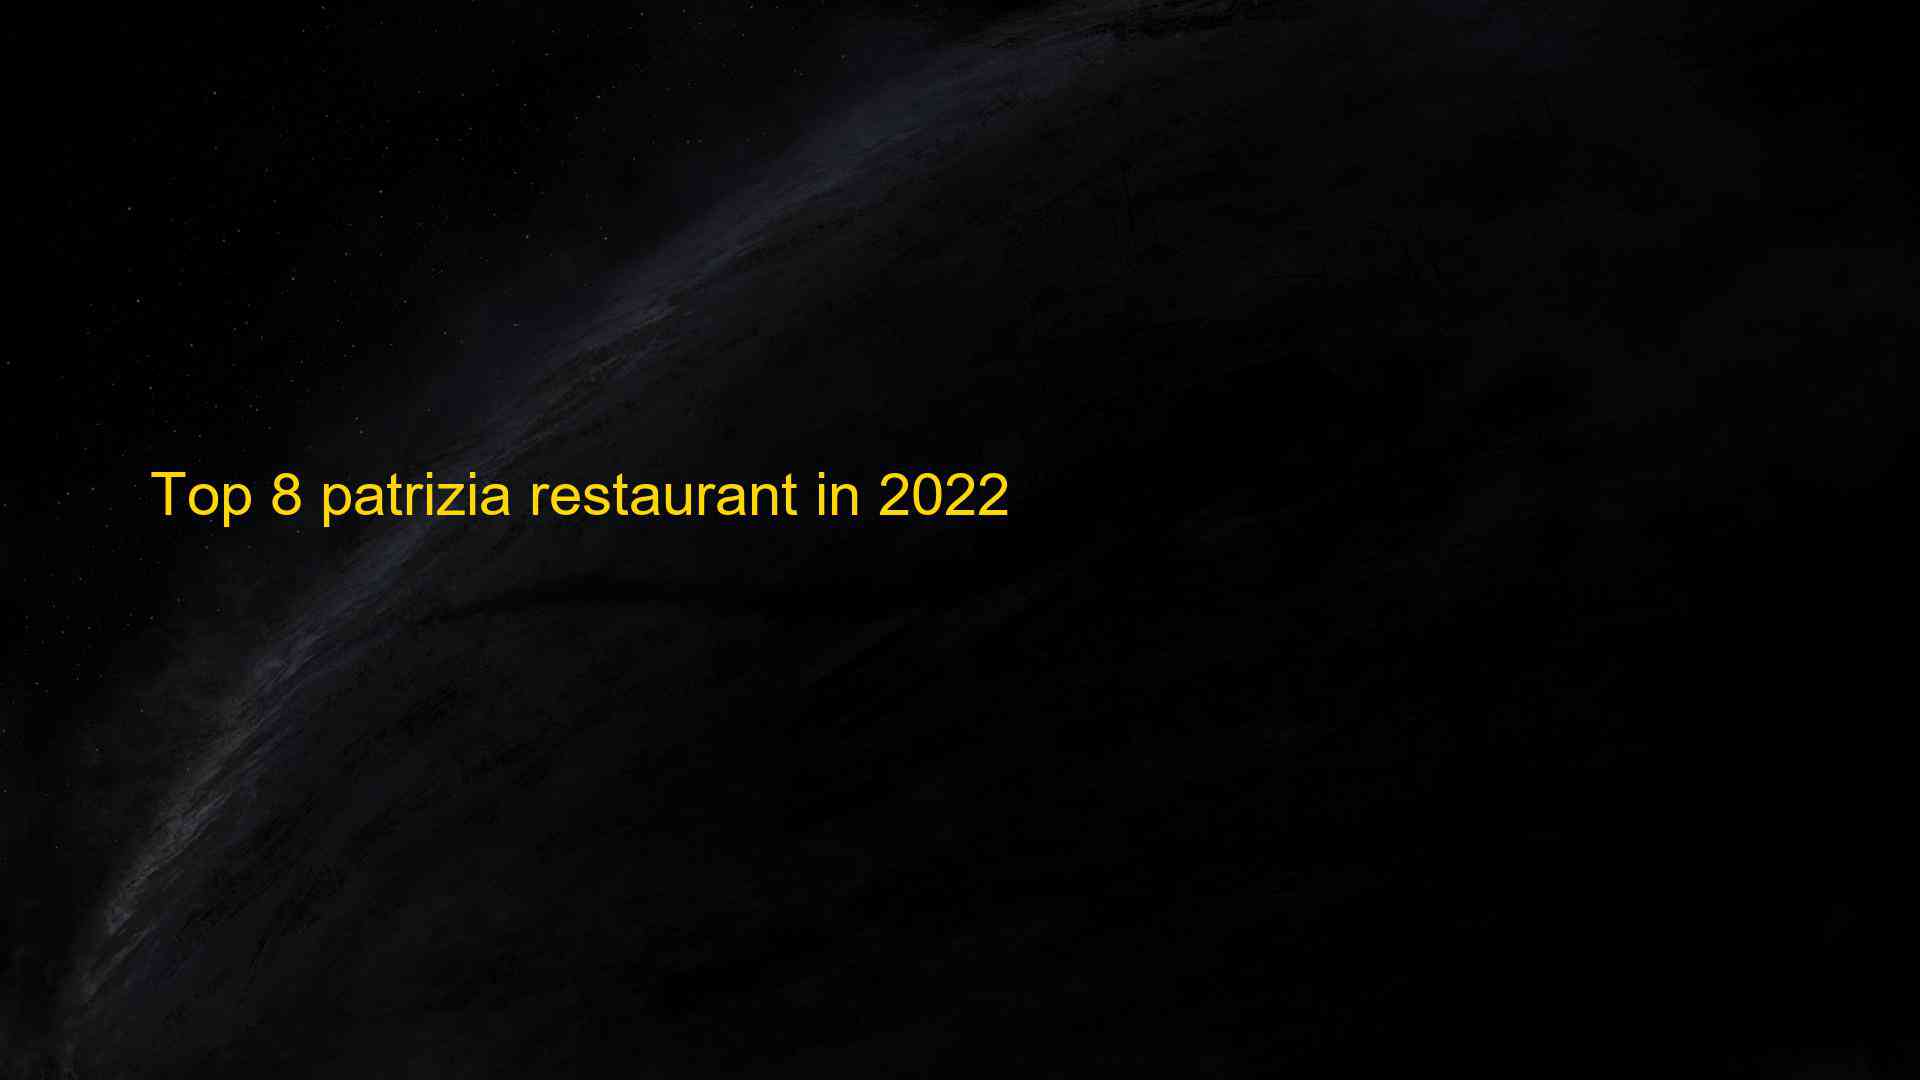 Top 8 patrizia restaurant in 2022 1662829629